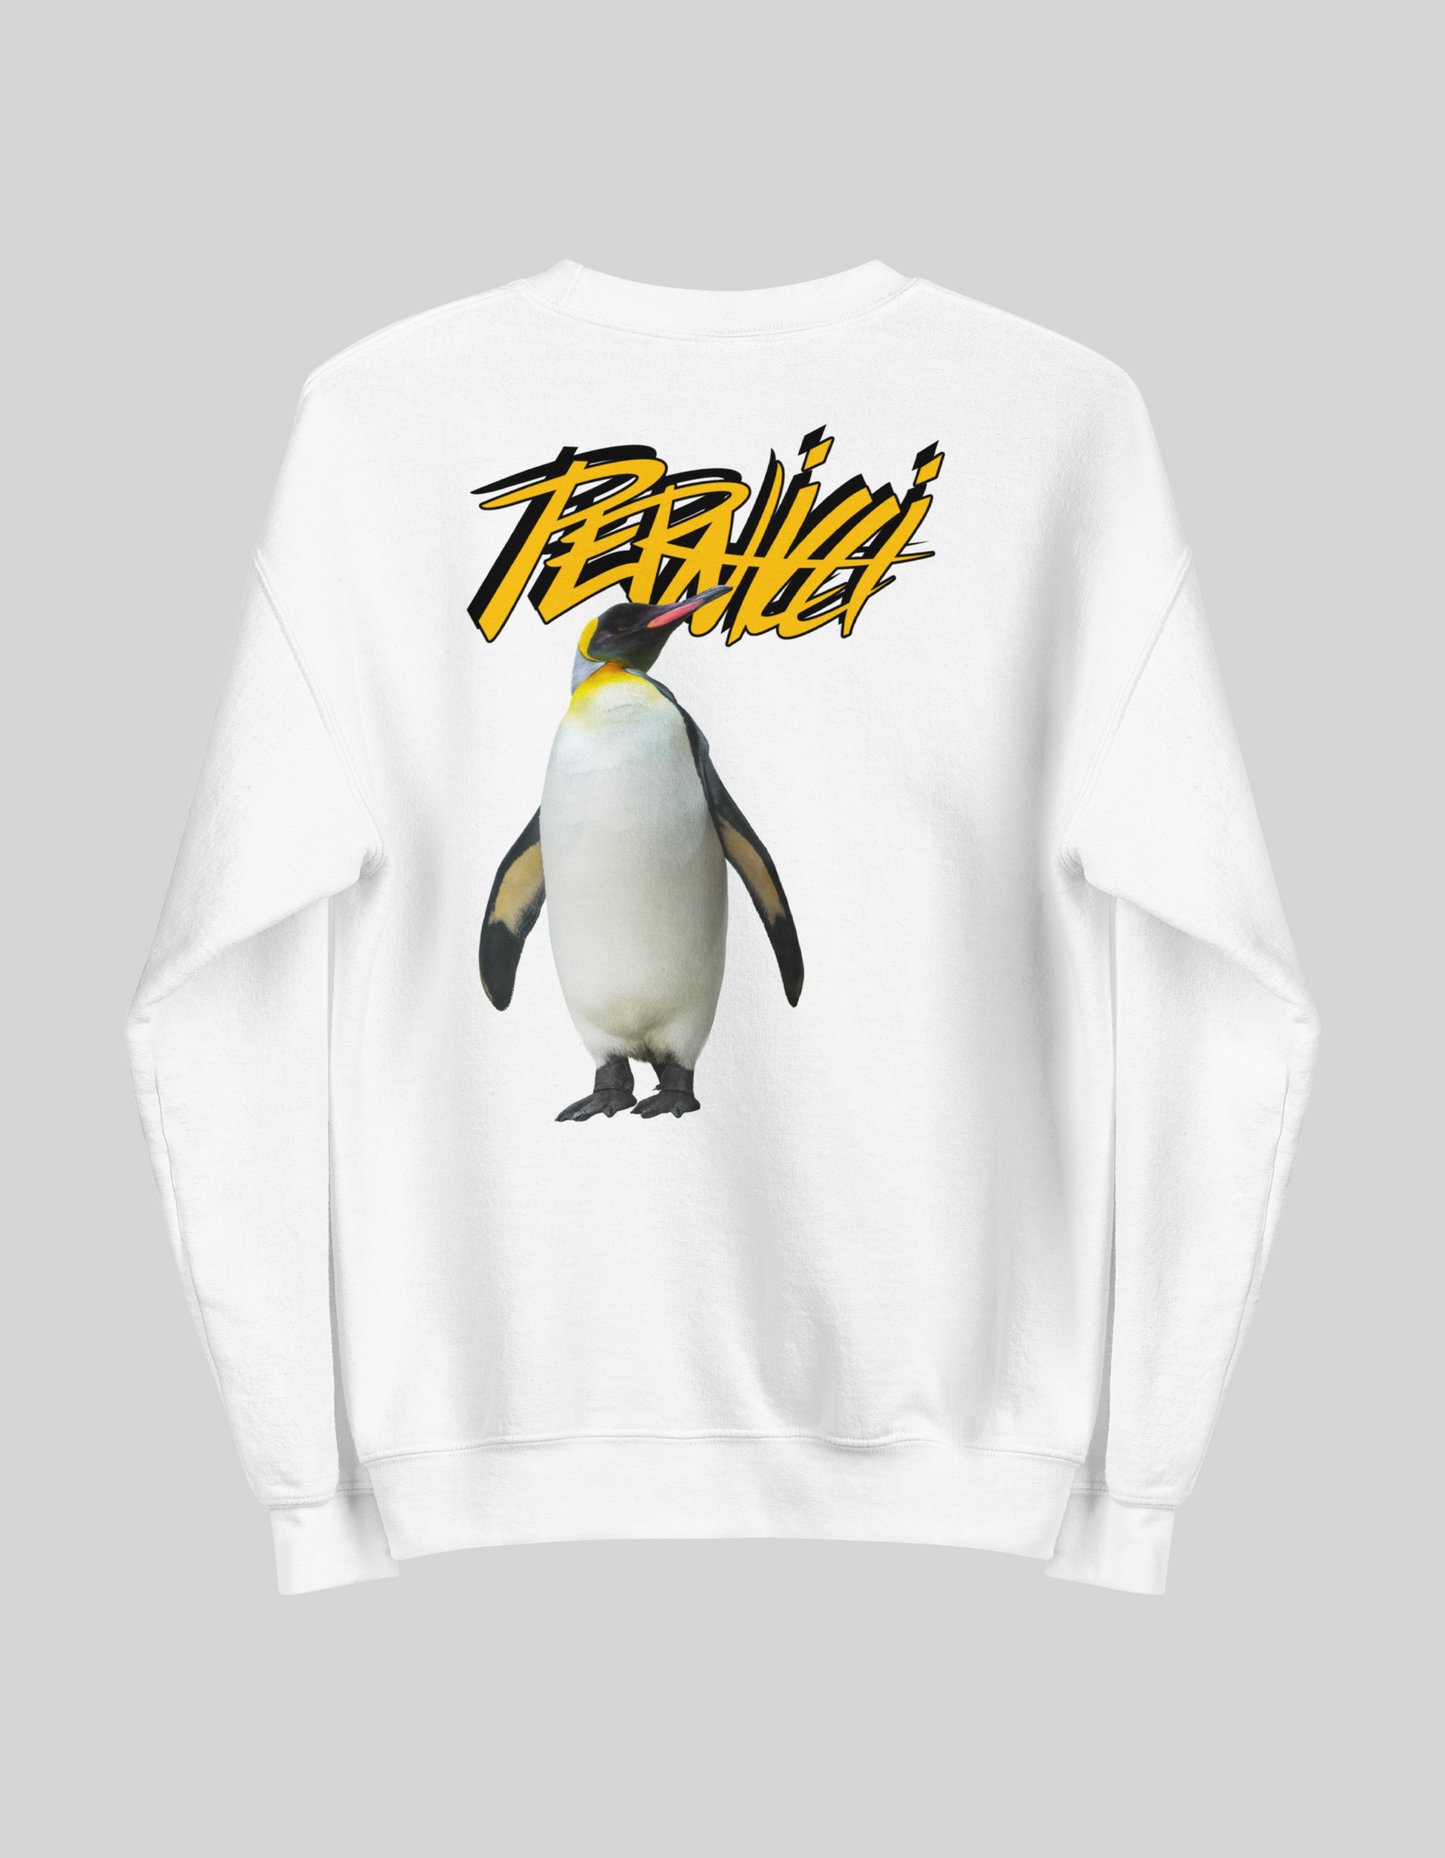 Unisex Sweatshirt Penguin